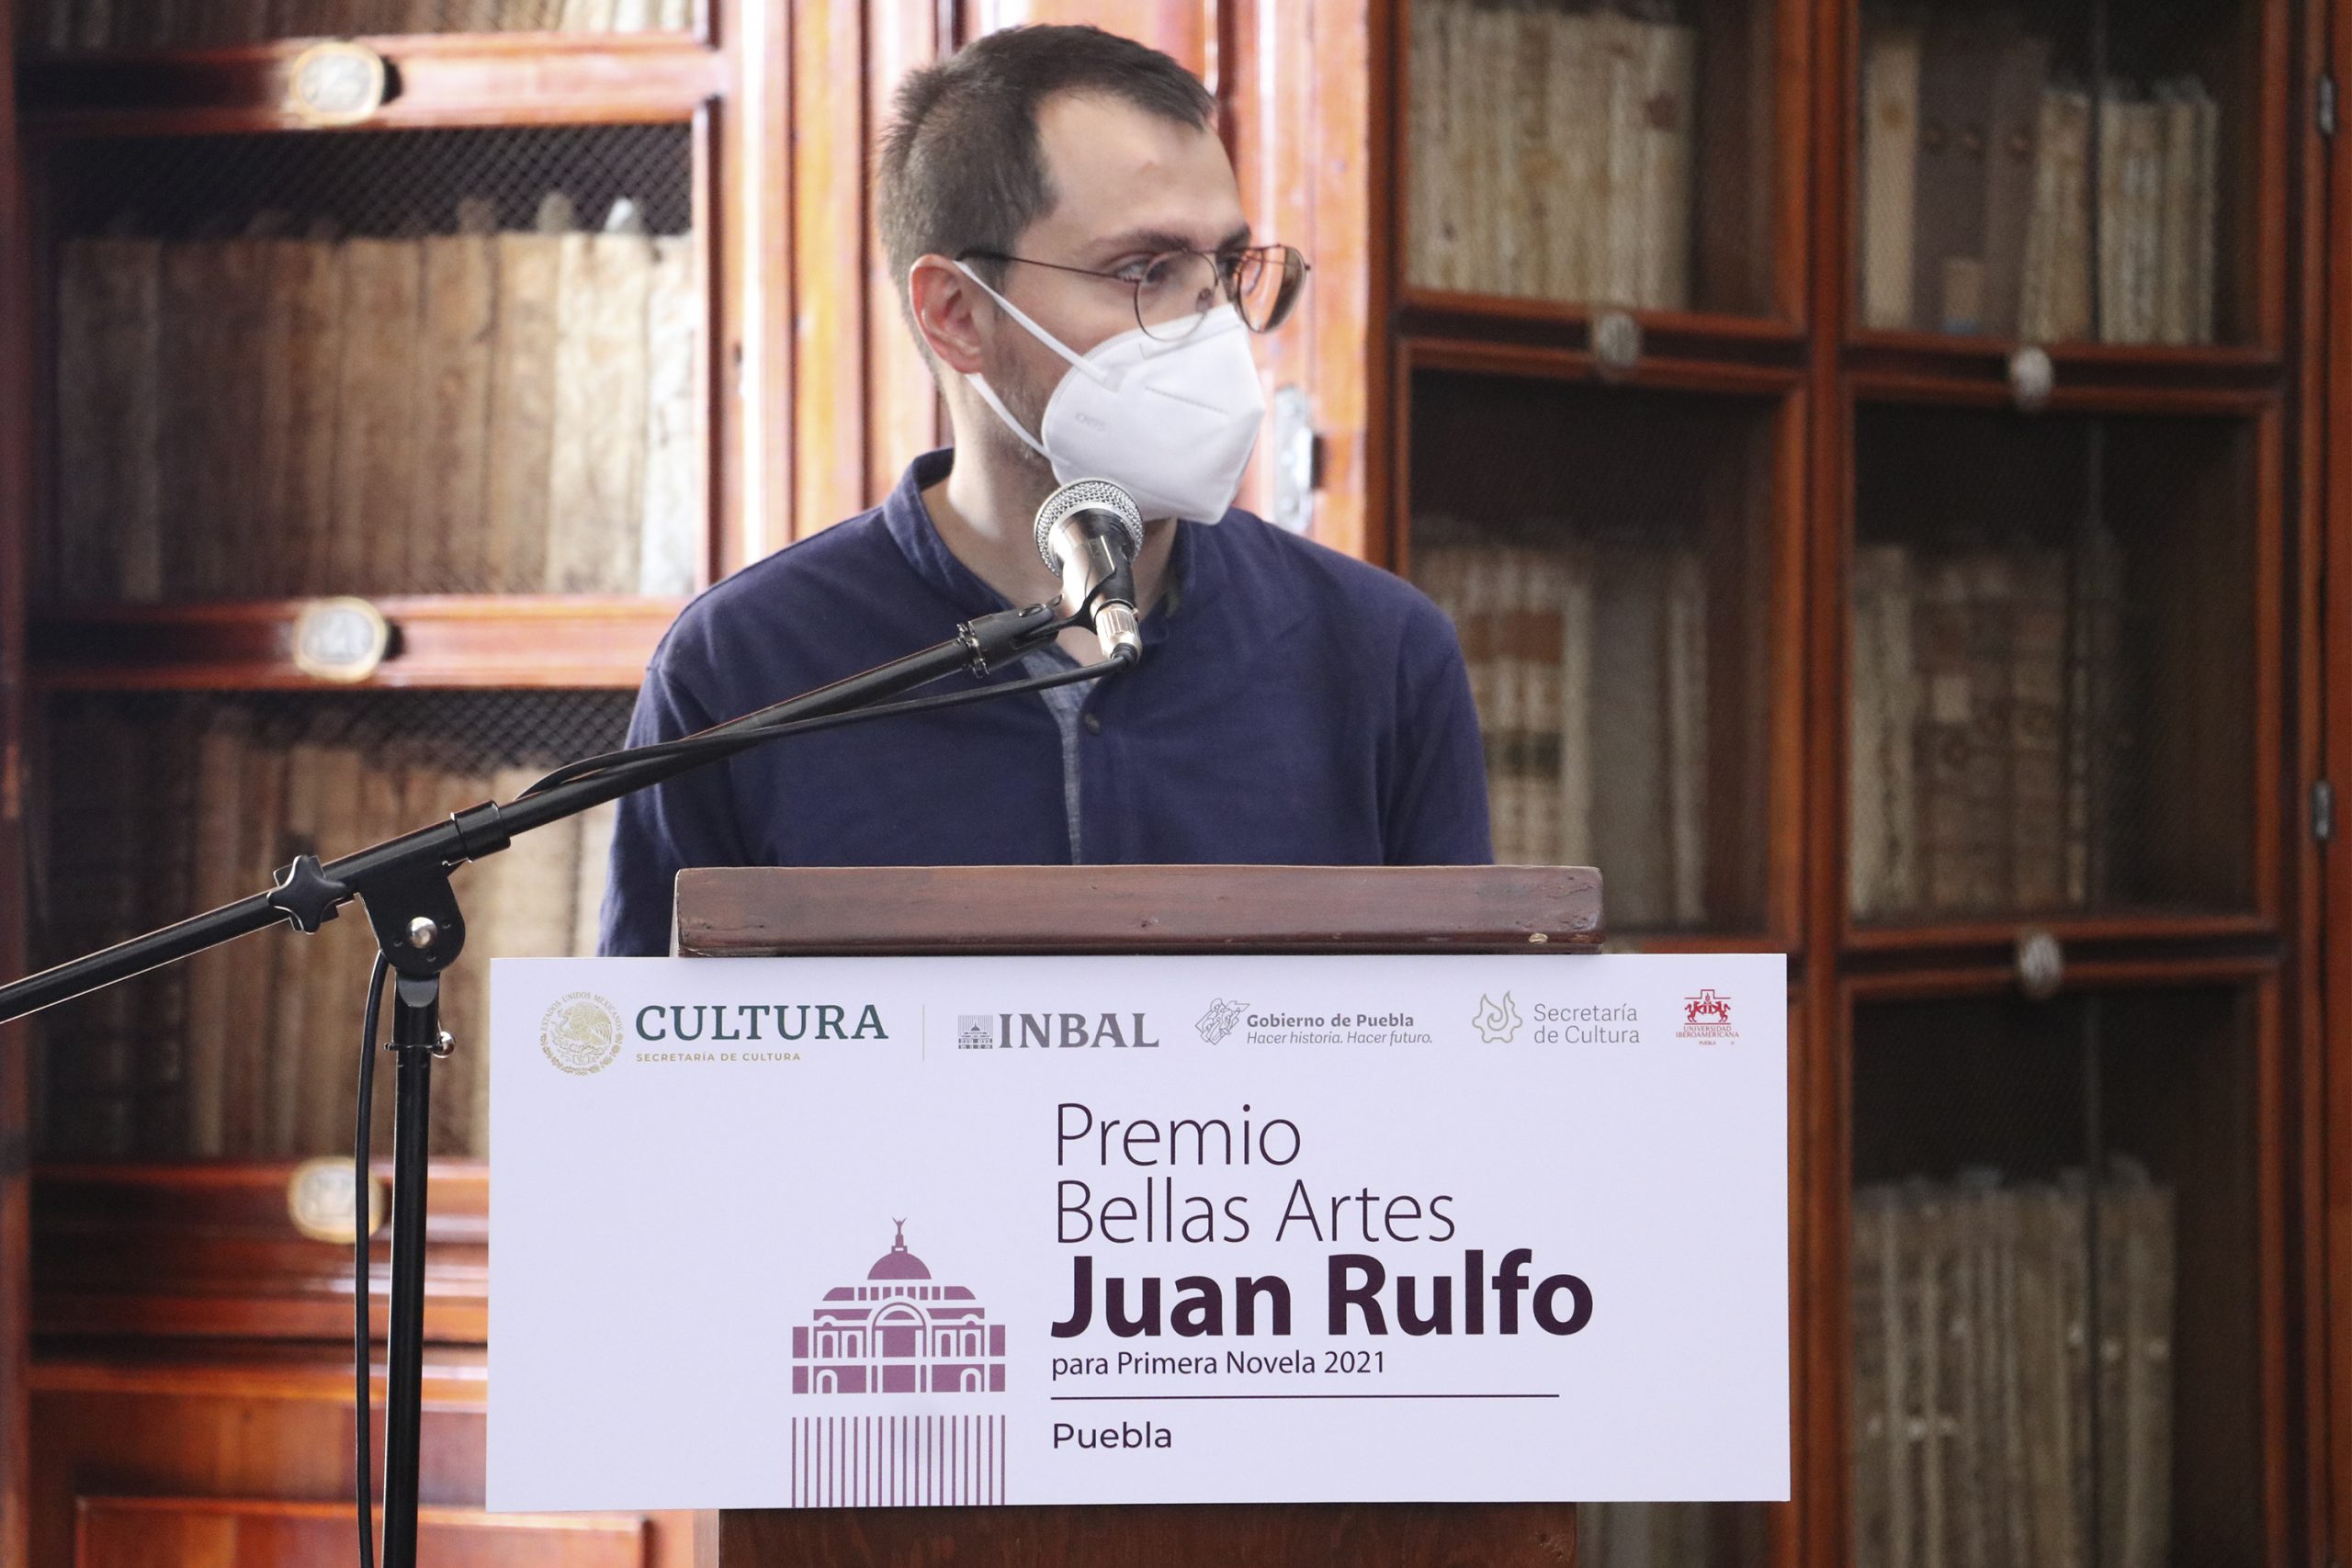 Entregan INBAL y Cultura “Premio a Bellas Artes Juan Rulfo para Primera Novela 2021”